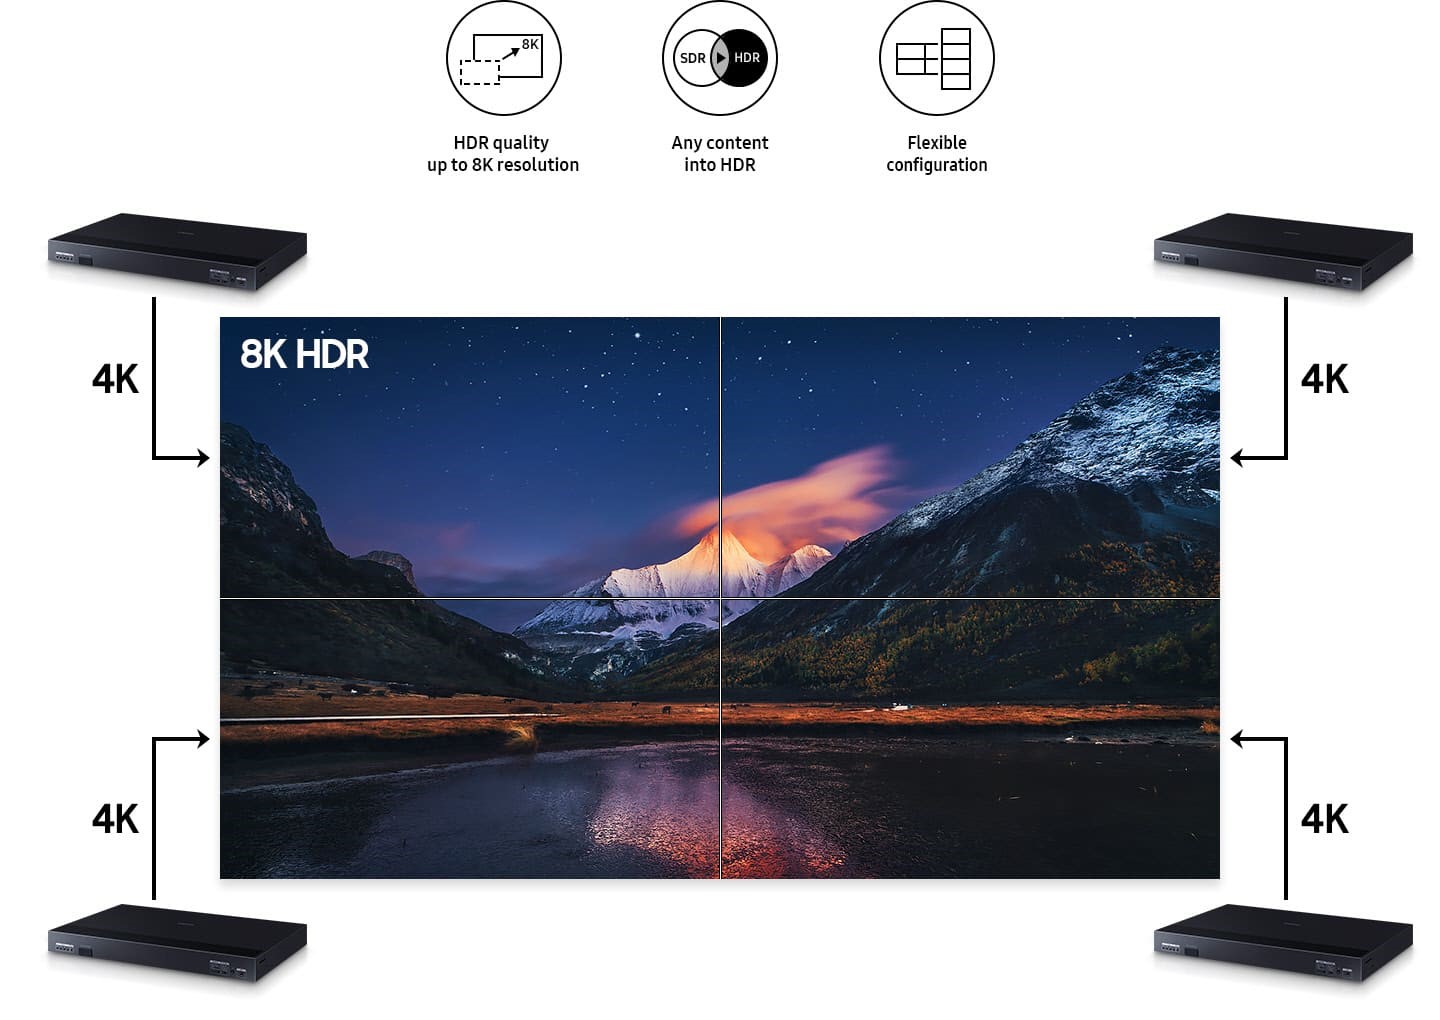 Màn hình LED Samsung sử dụng HDR 8K